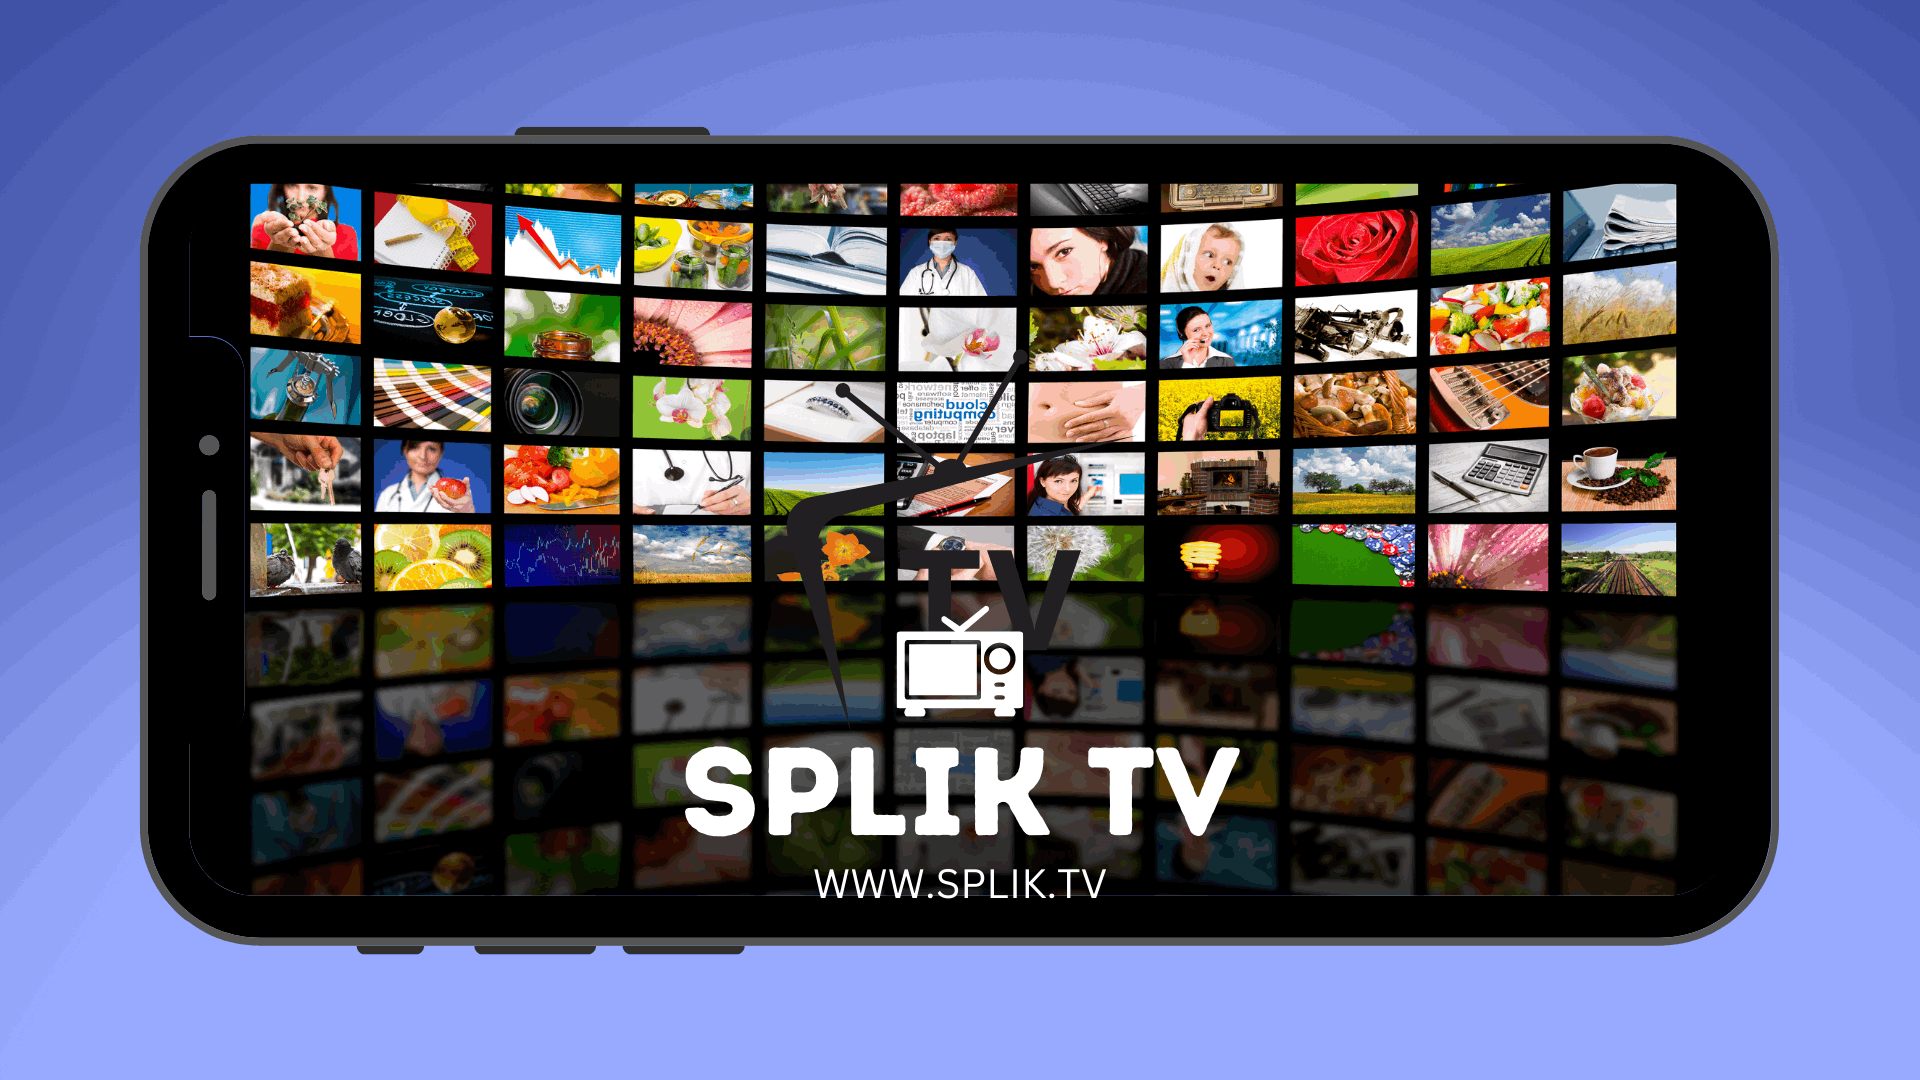 SplikTv - Vea gratis y en línea sus programas favoritos